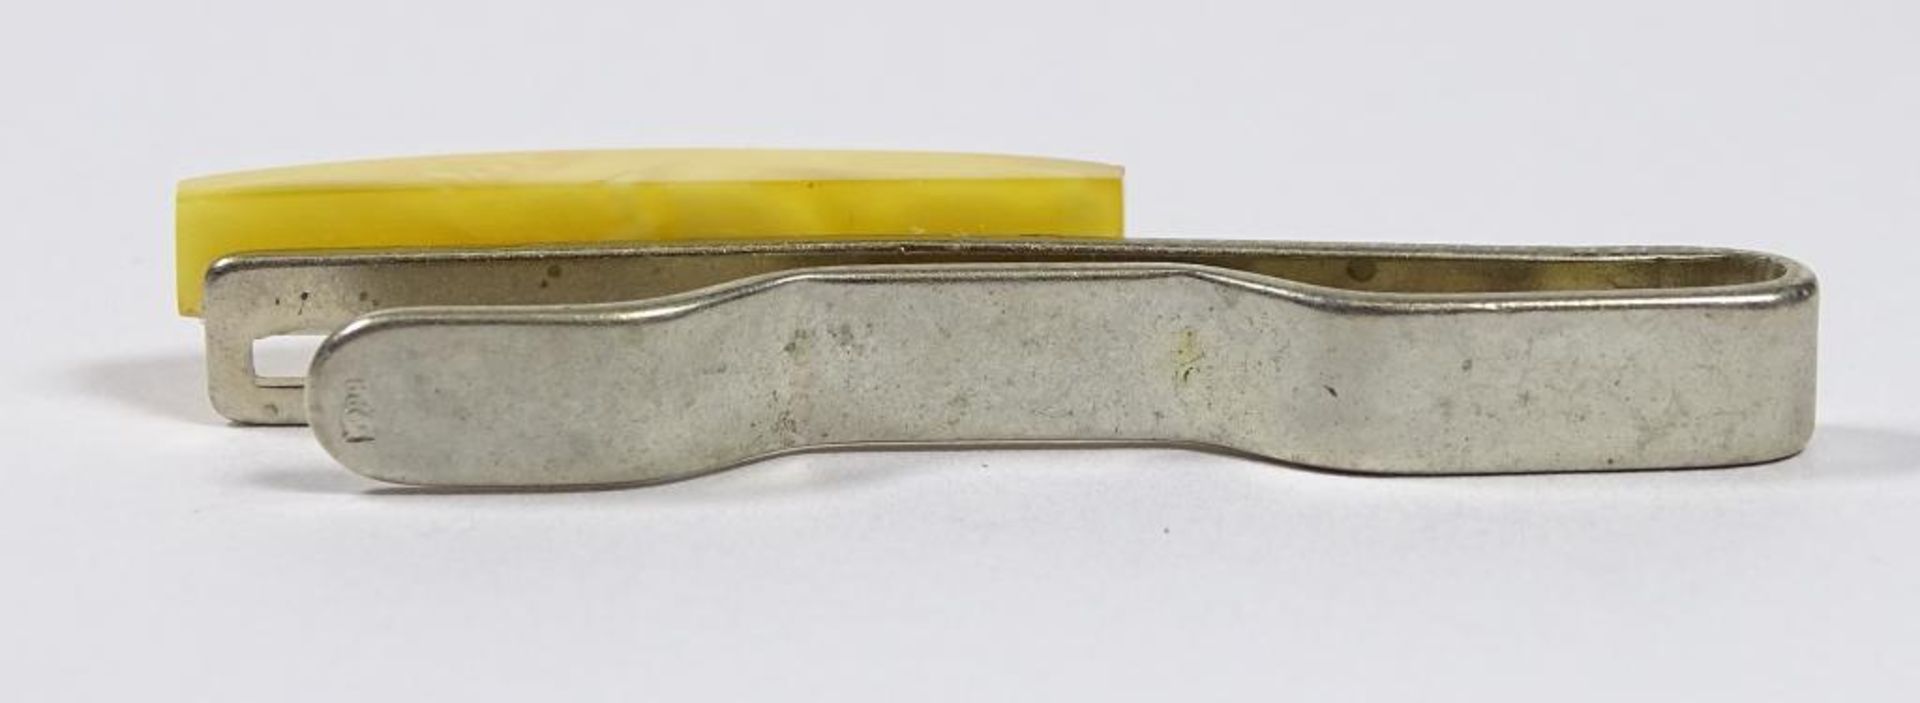 Krawattenklammer,versilbert, gelber Bernstein,L-50mm, 5,2gr. - Bild 3 aus 4